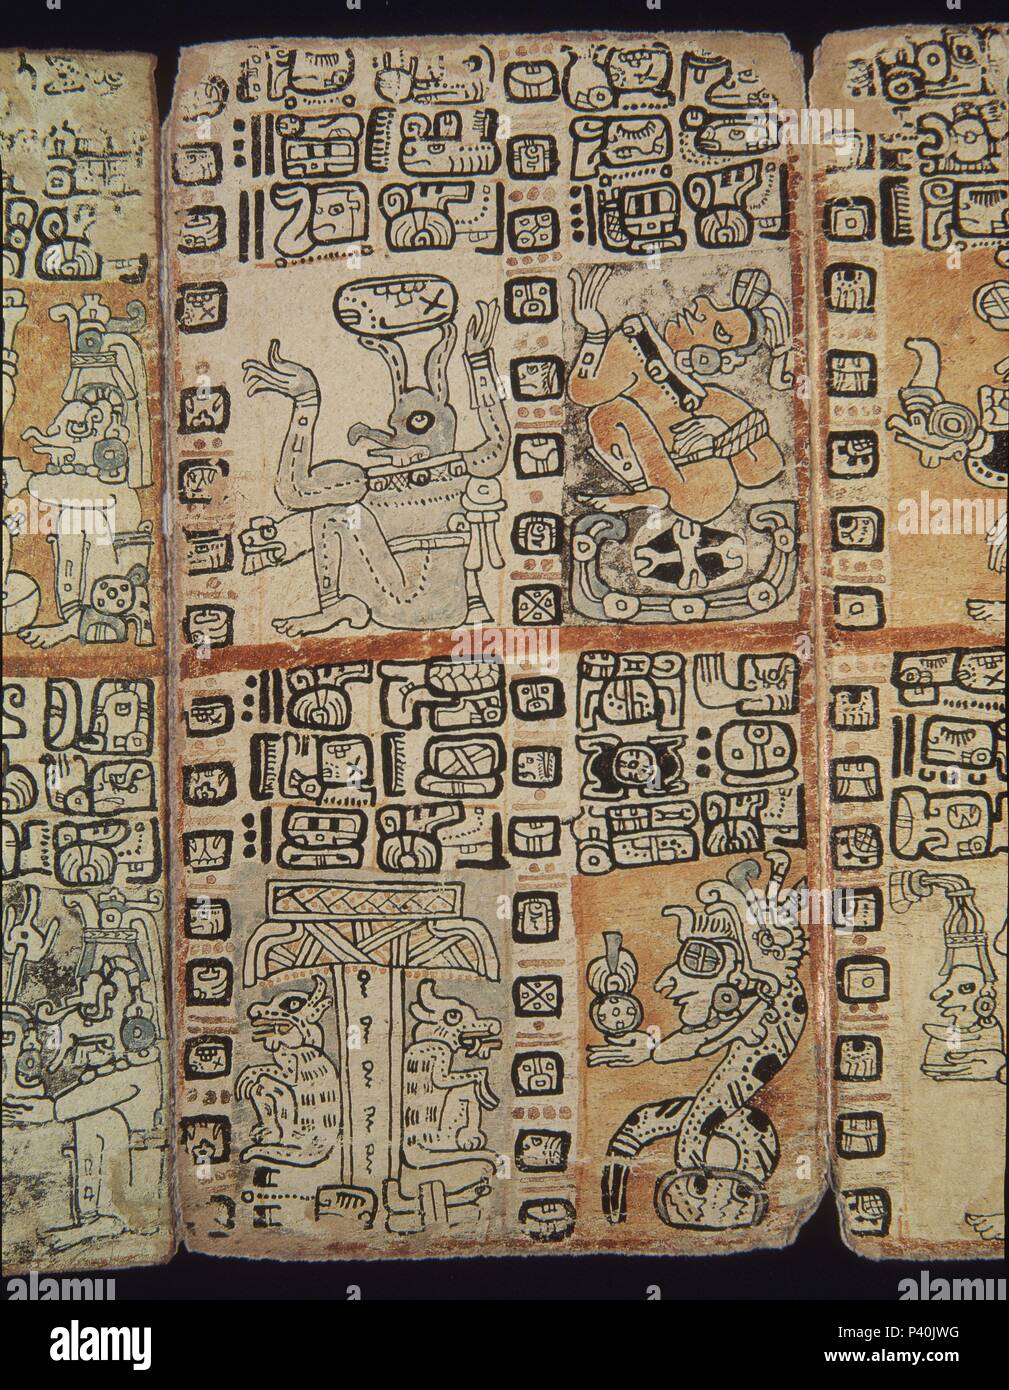 Par télécopieur. Page de la Codex Tro-Cortesianus. La culture maya. Les hommes et les dieux. 13e-15e siècles. Madrid, Musée de l'Amérique. Lieu : MUSÉE DE L'AMÉRIQUE - COLECCION, MADRID, ESPAGNE. Banque D'Images